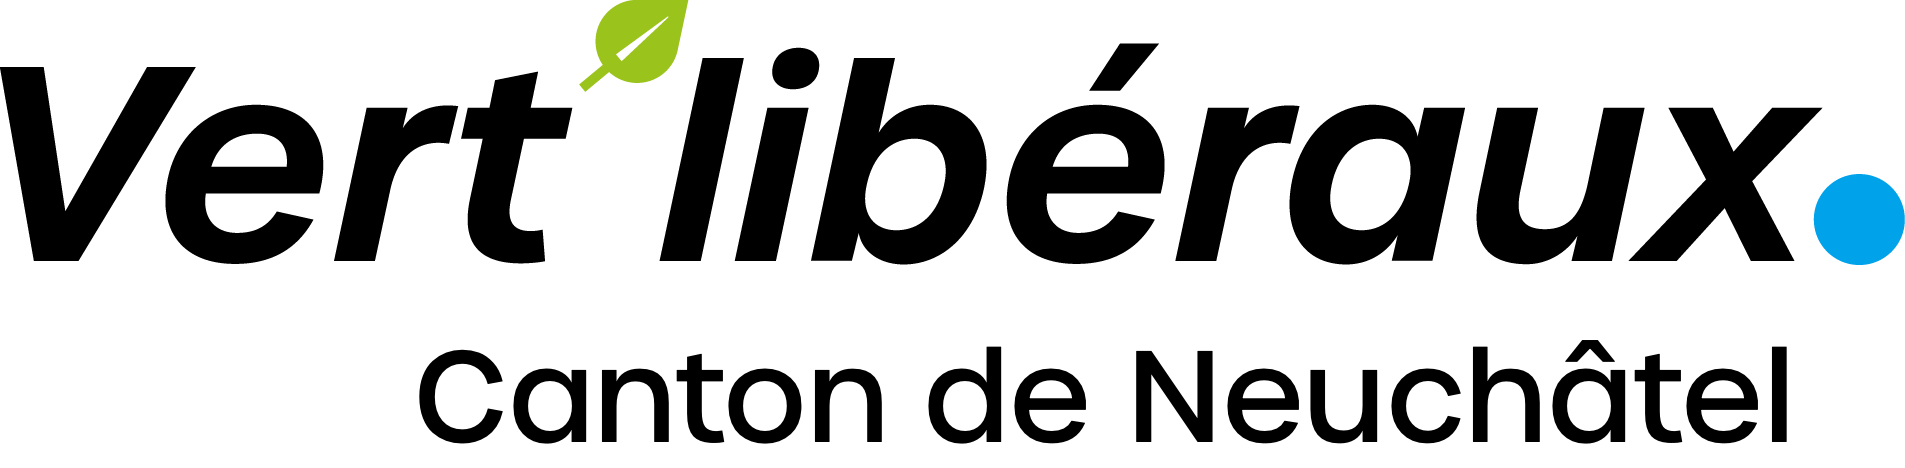 Logo_vert’slibéraux_neuchatel